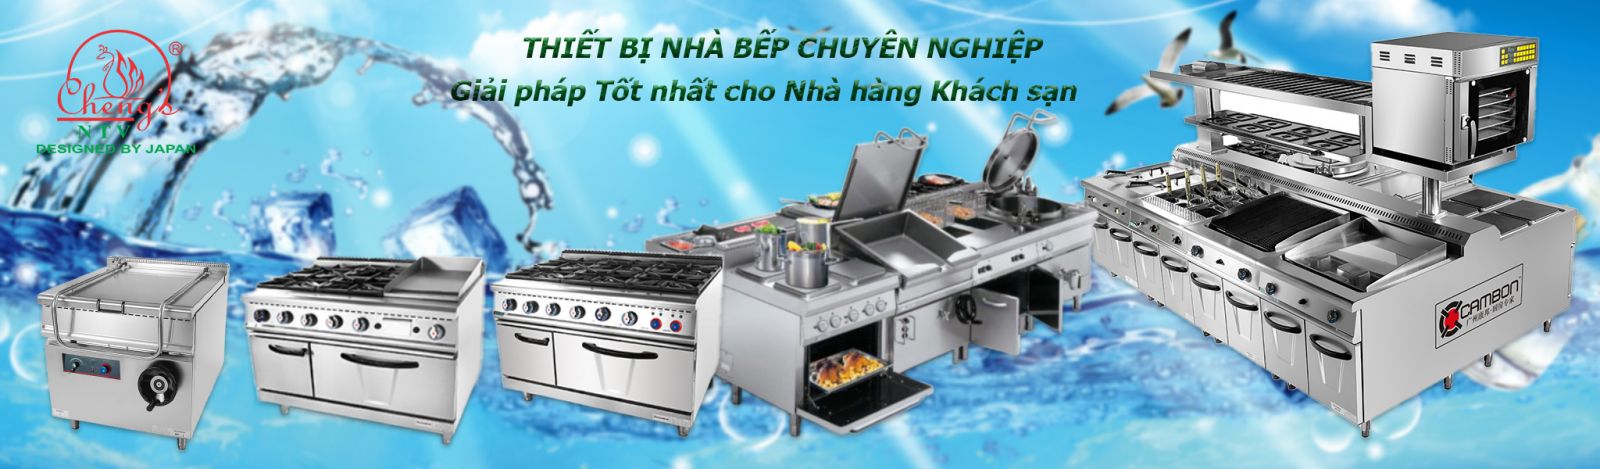 Hơn 30 năm NTV Chengs góp phần cho căn bếp của bạn chuyên nghiệp hơn